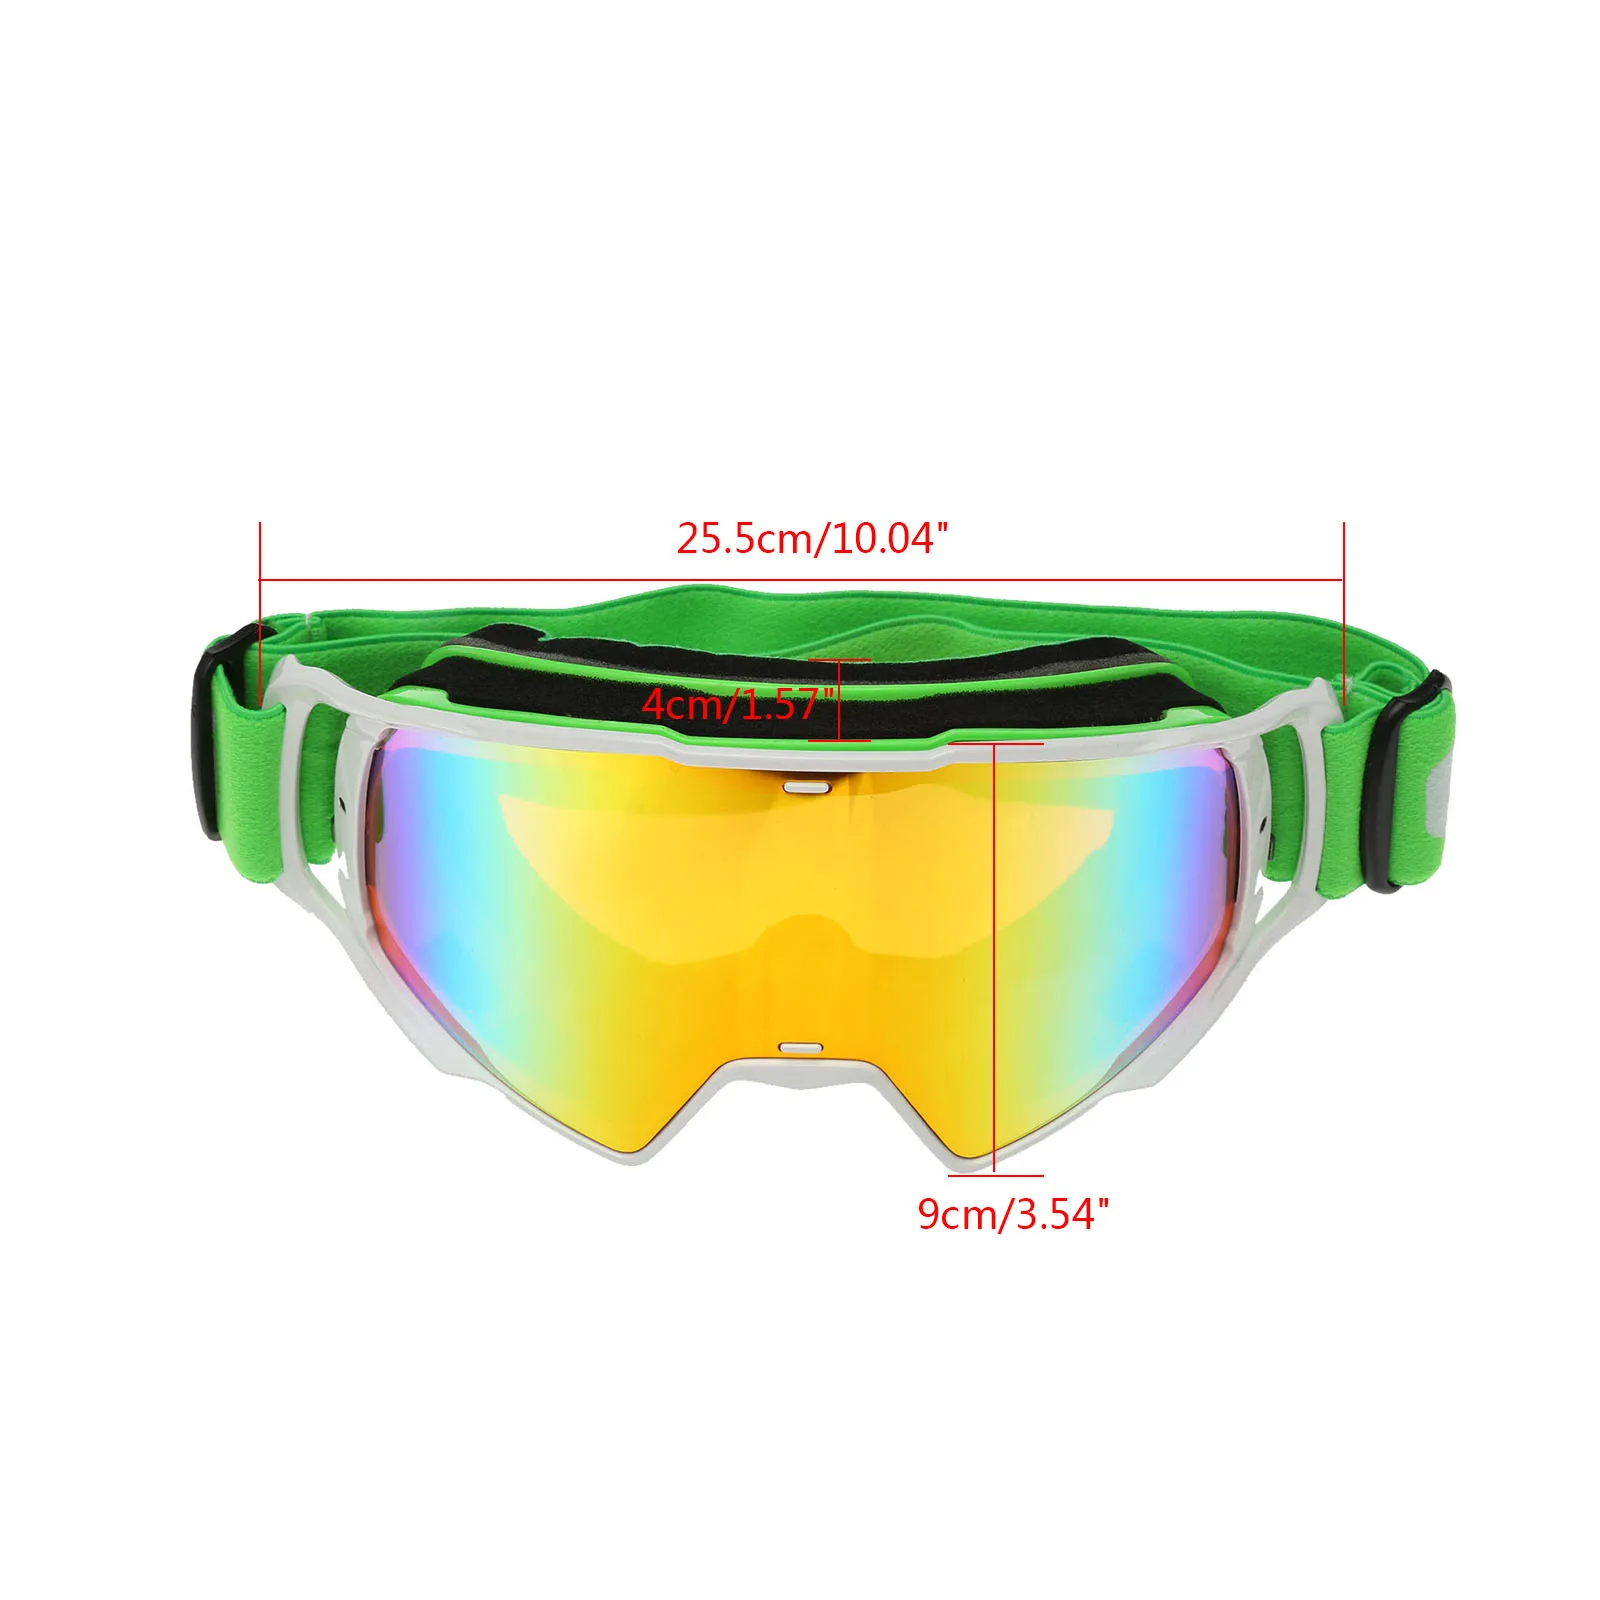 Мотоциклетные очки для мотокросса Лыжный спорт Сноуборд гибкие солнцезащитные очки УФ внедорожные очки для квадроцикла красочные зеленые